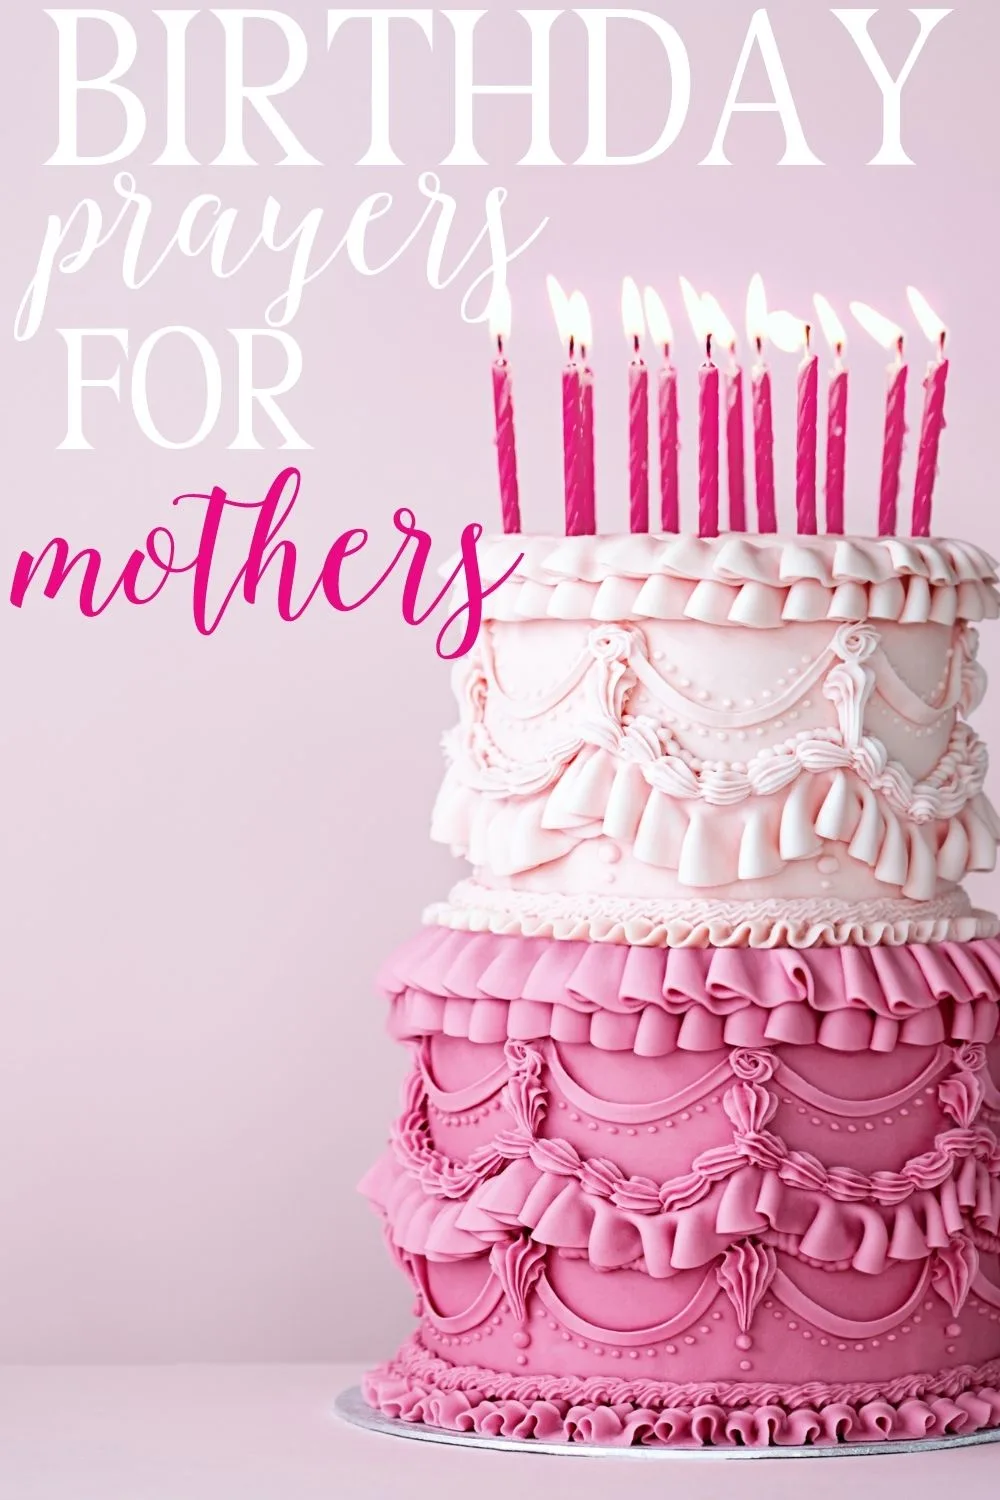 Happy Birthday Mummy Cake – Beautiful Birthday Cakes